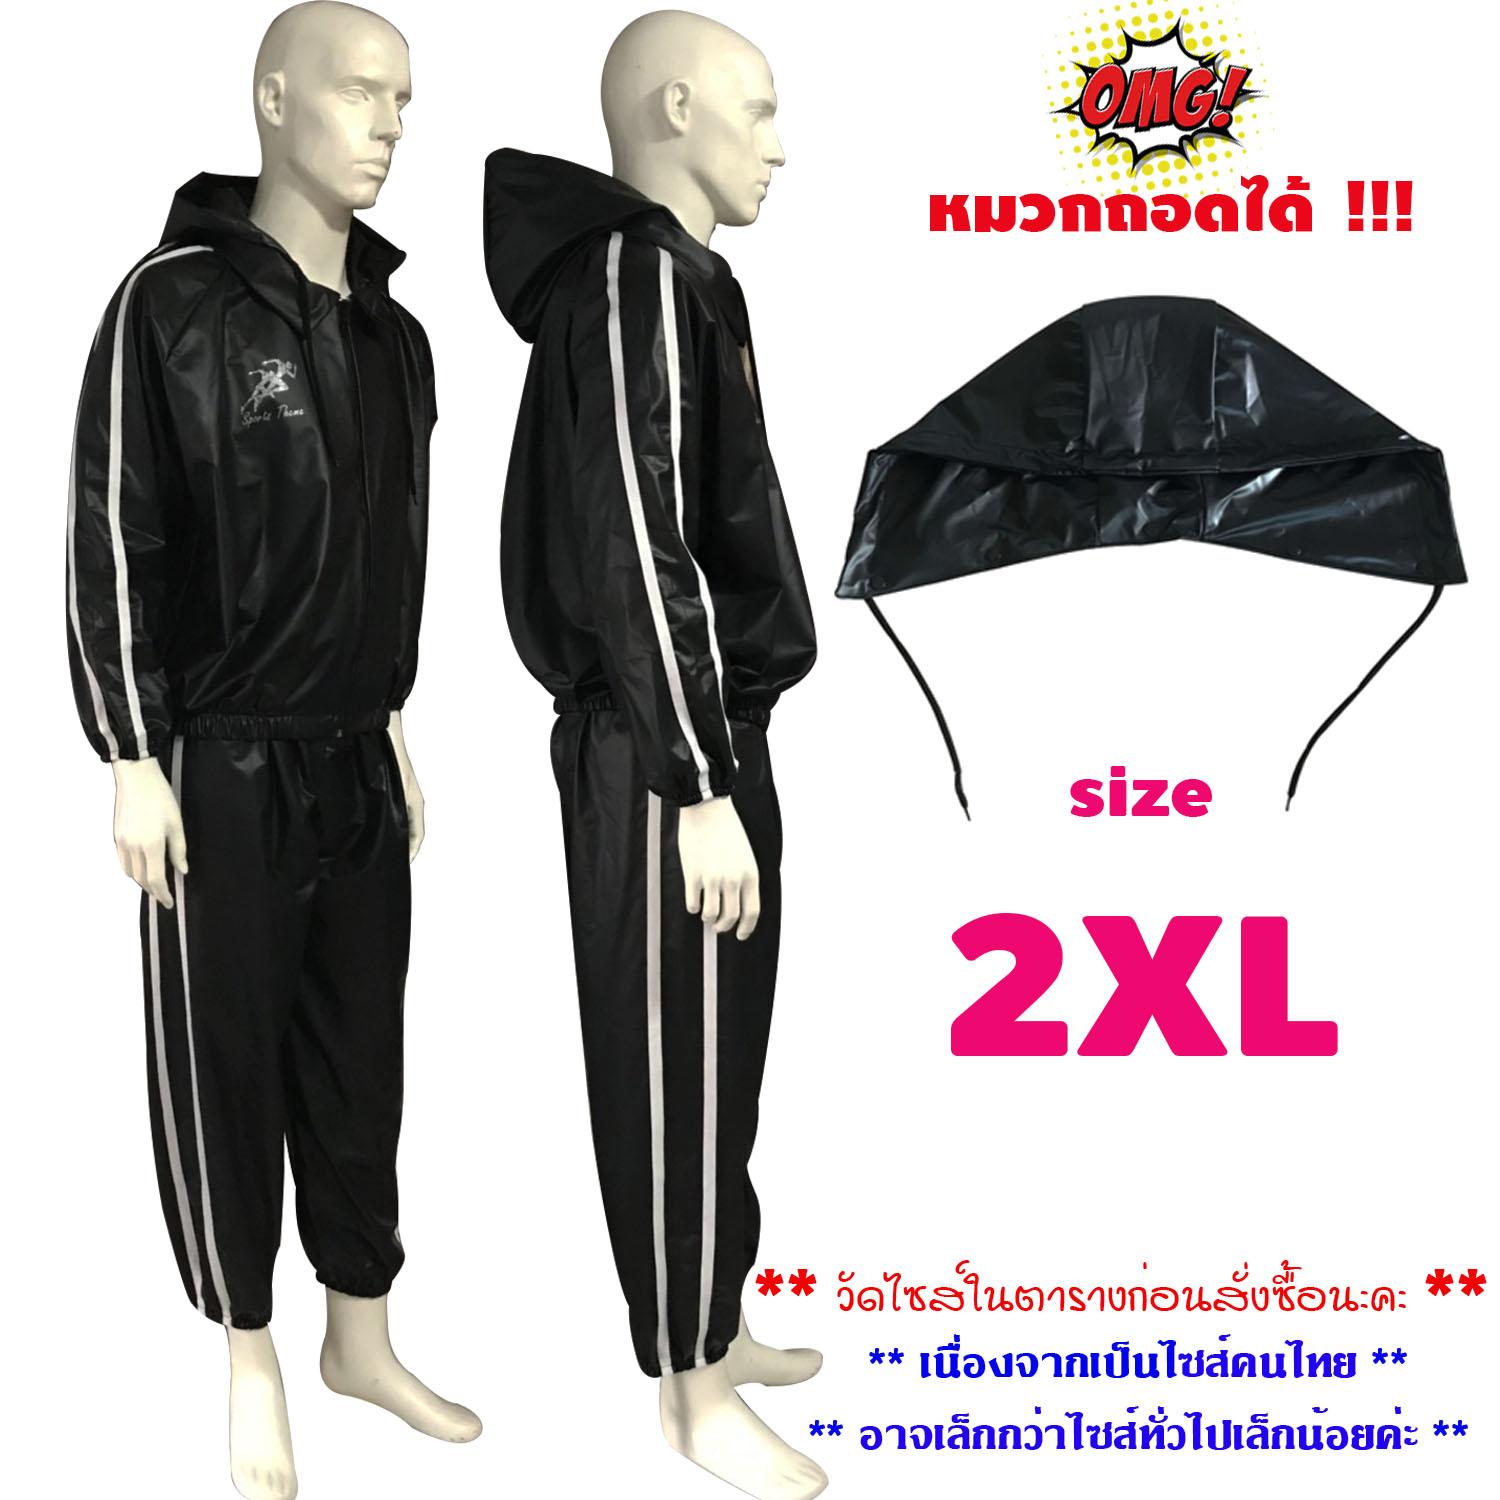 Sports Theme ชุดซาวน่า รุ่นใหม่ ล่าสุด ชุดกีฬา แฟชั่น มีซิปรูด เสื้อ+กางเกง+ฮู้ด ถอดได้ Sauna Suit ออกกำลังกาย รีดเหงื่อ ลดน้ำหนัก สีดำ แถบข้าง สีขาว